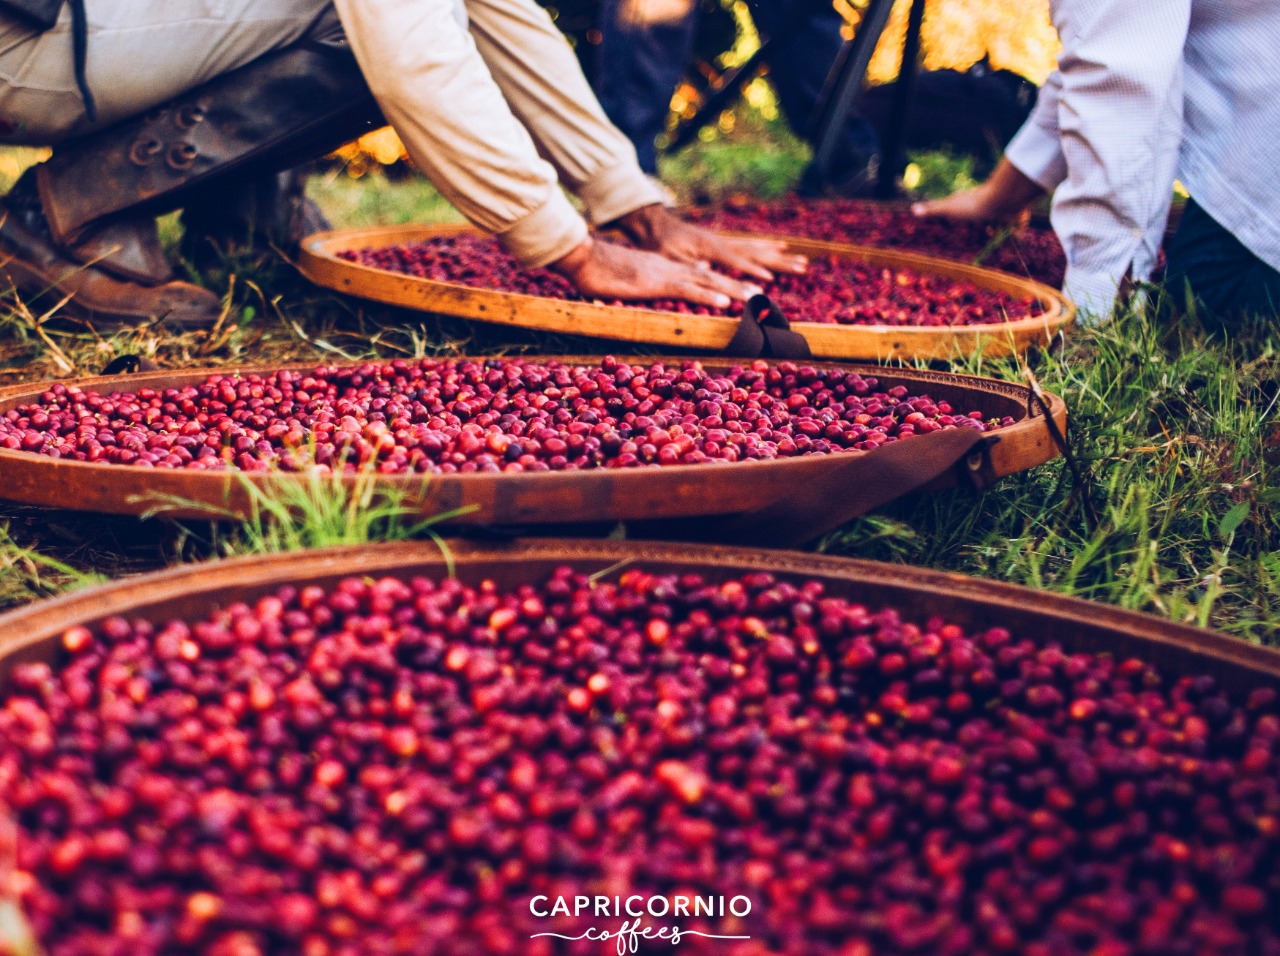 A Capricornio Coffees produz sementes de café da região do Trópico de Capricórnio, entre São Paulo e Paraná.